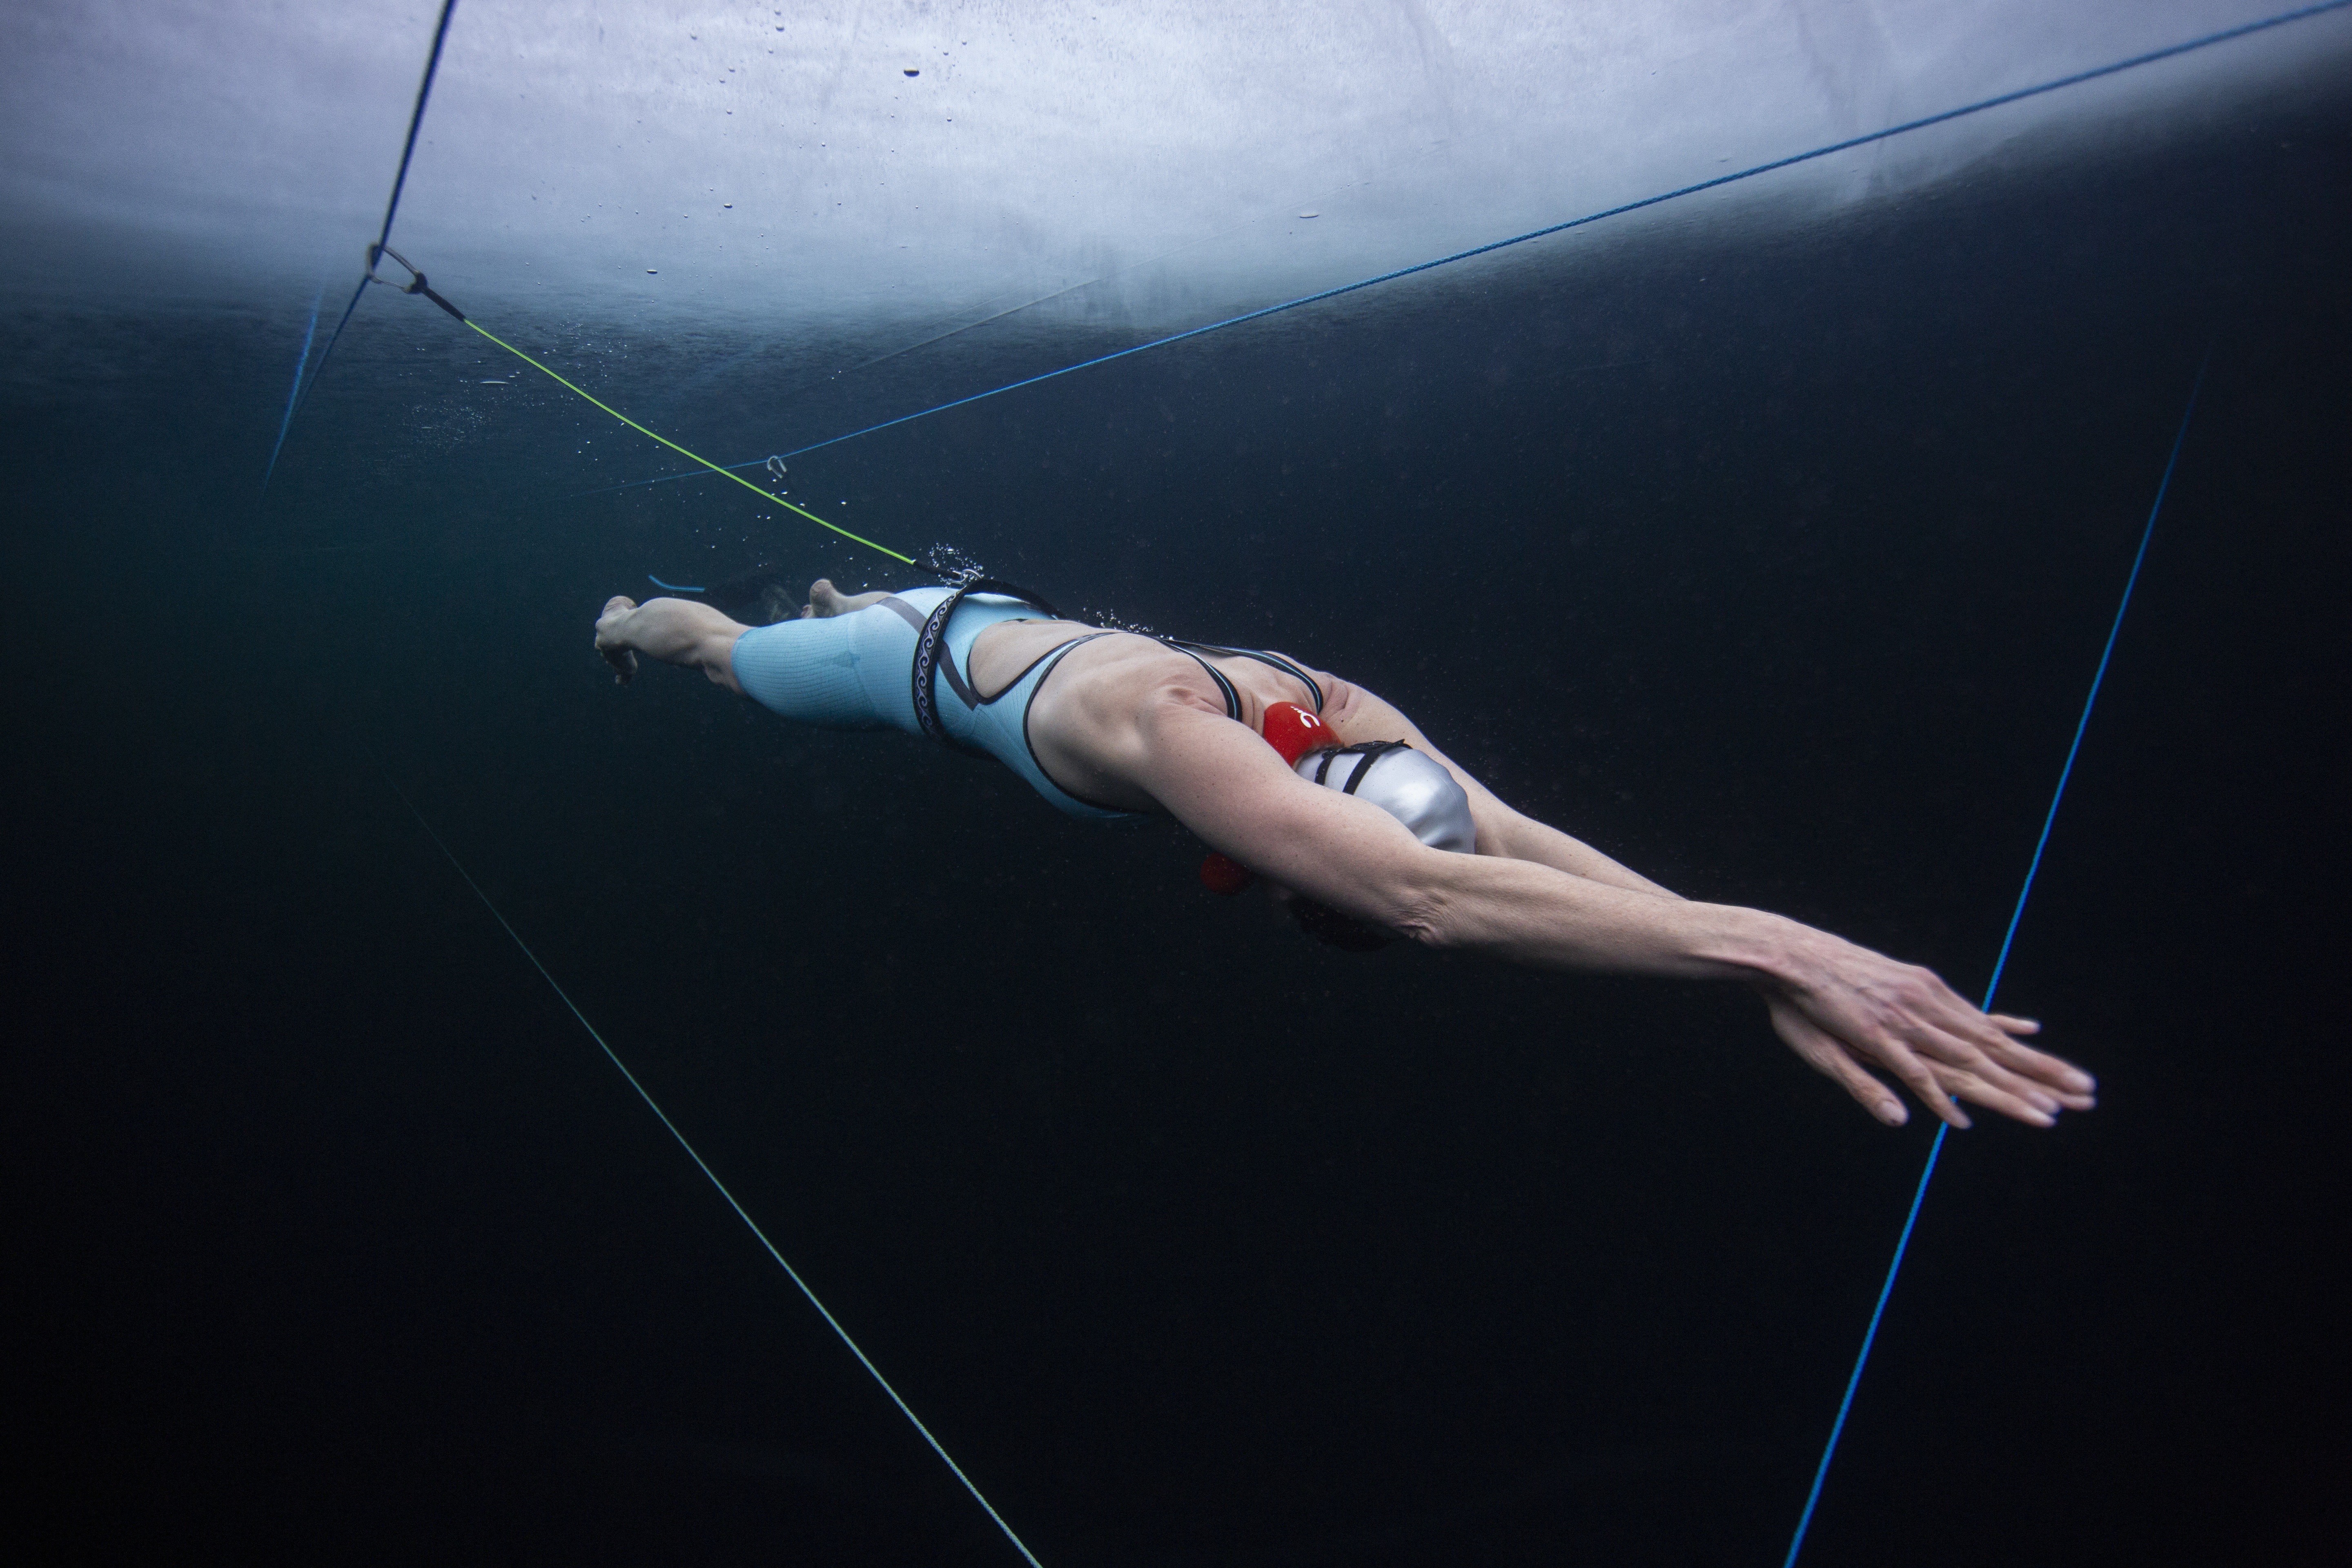 Johanna Nordblad megdöntötte a jég alatti úszás távolsági rekordját